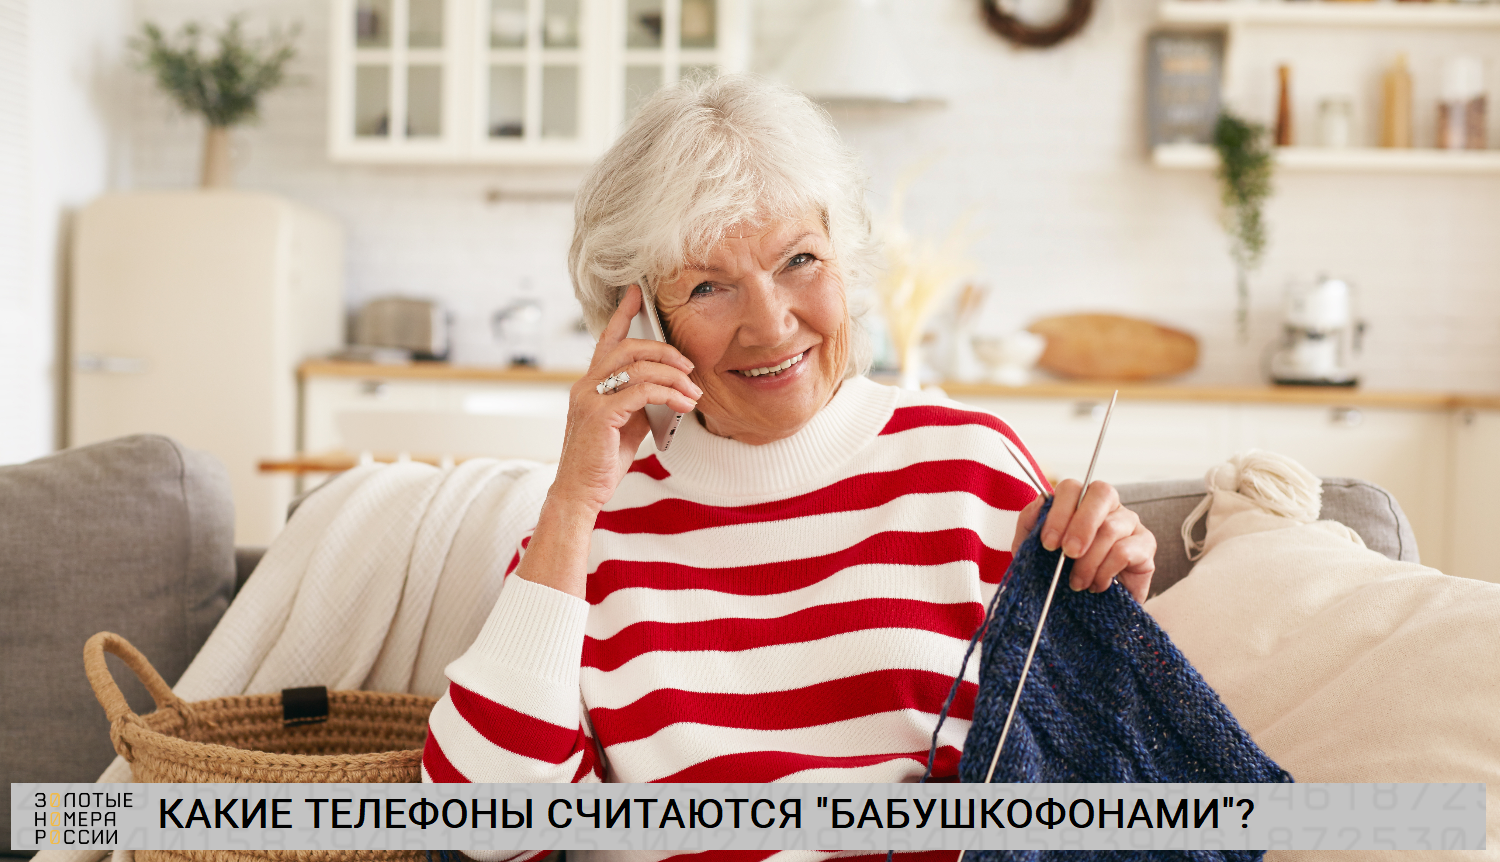 Какие телефона считаются "бабушкофонами"?